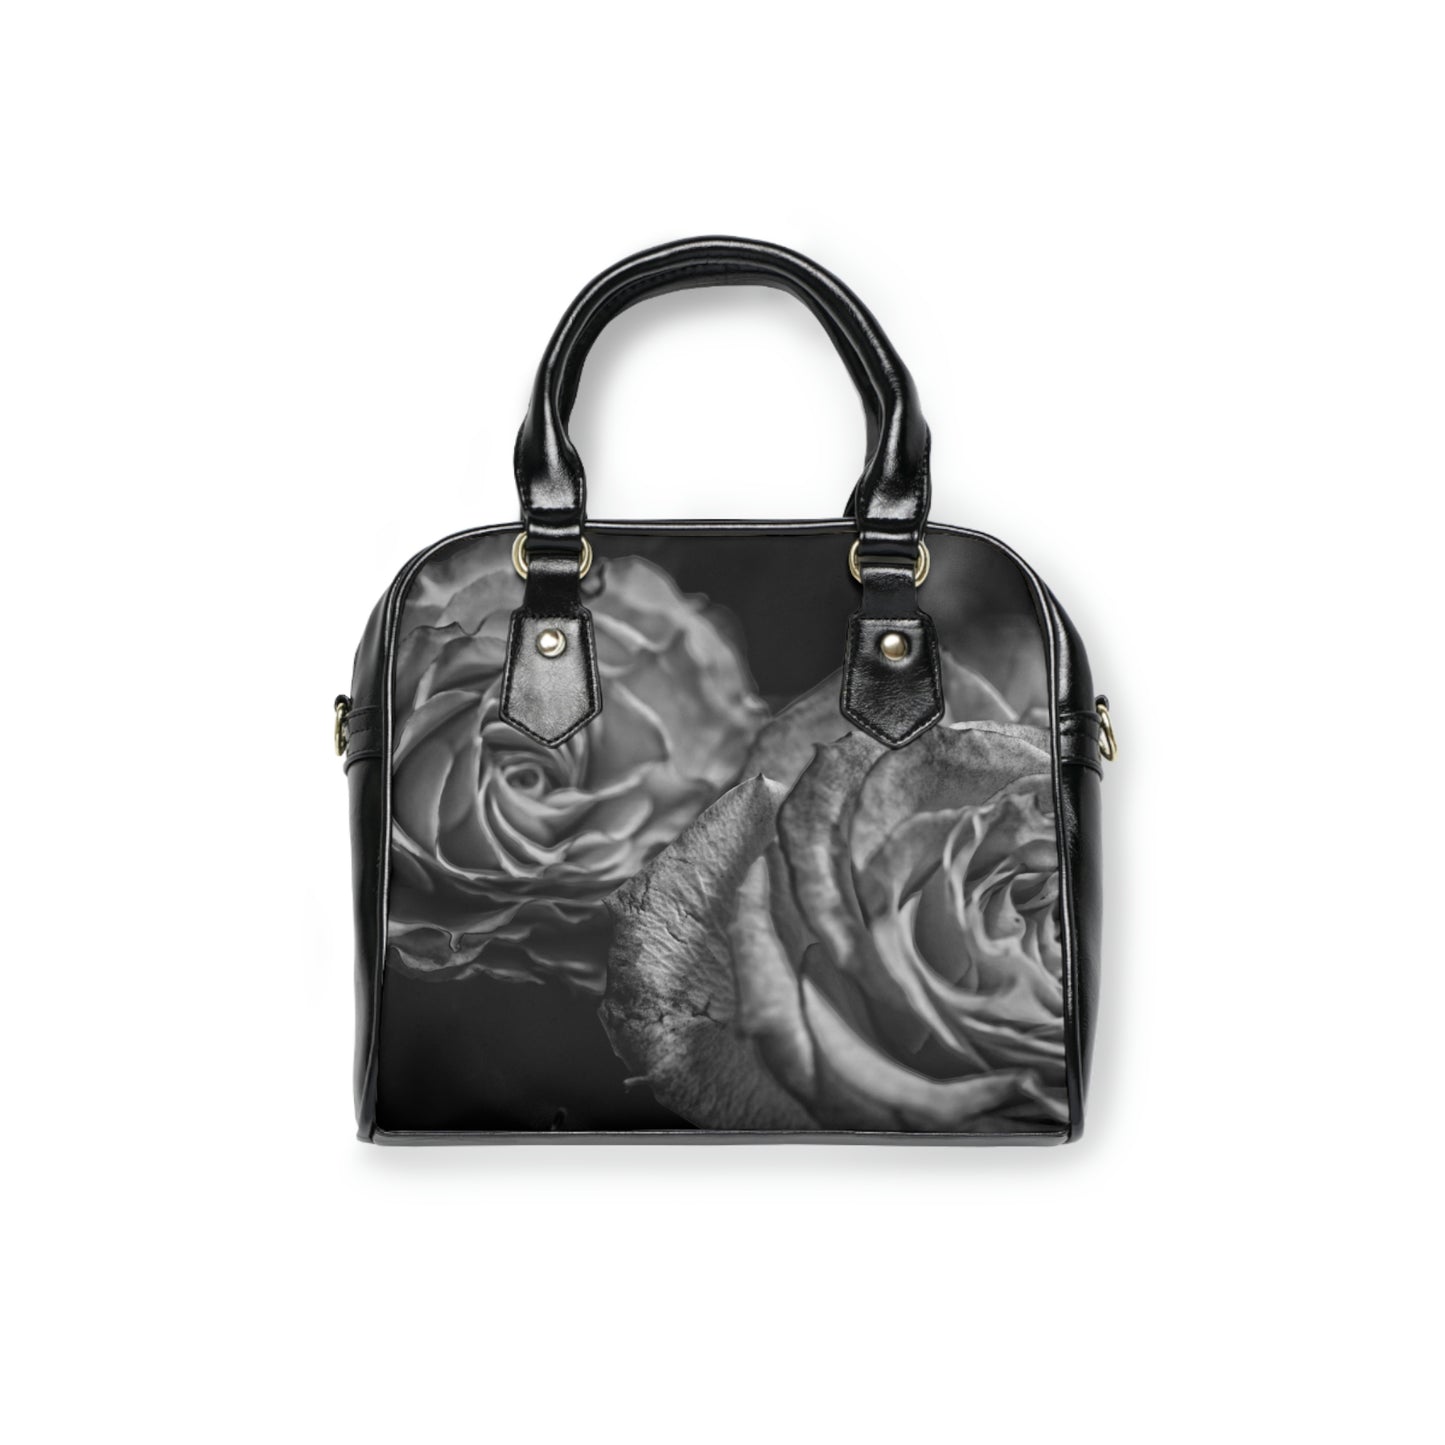 Black and White Tea Roses Shoulder Handbag